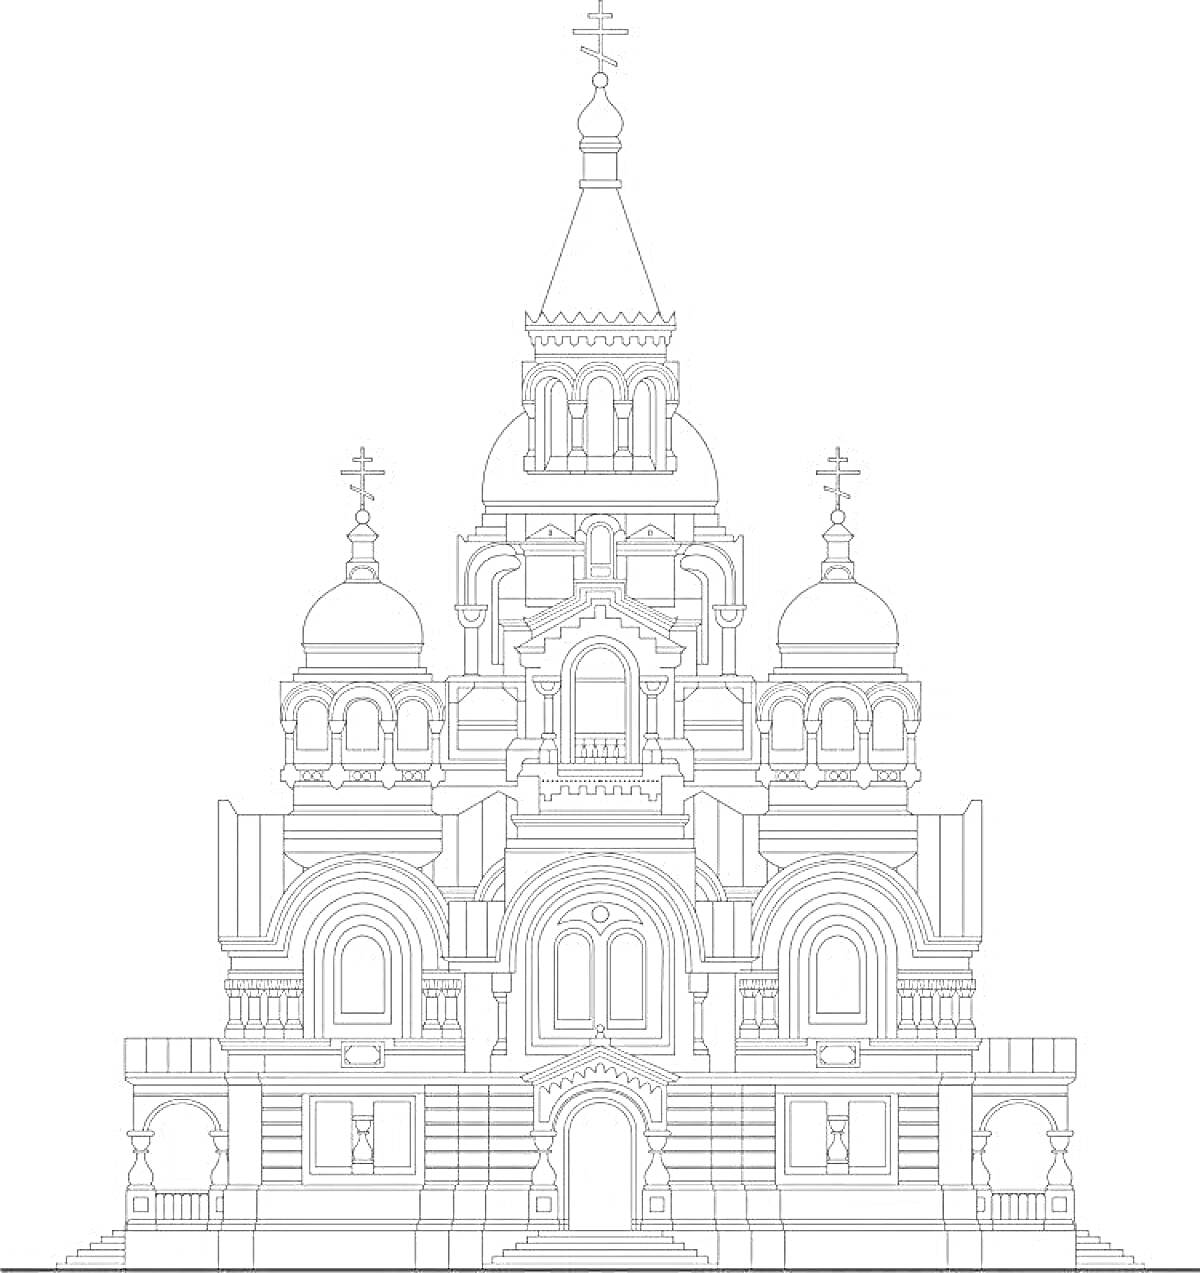 Раскраска Храм Спаса на Крови, фасад с куполами и крестами, детализированная архитектура